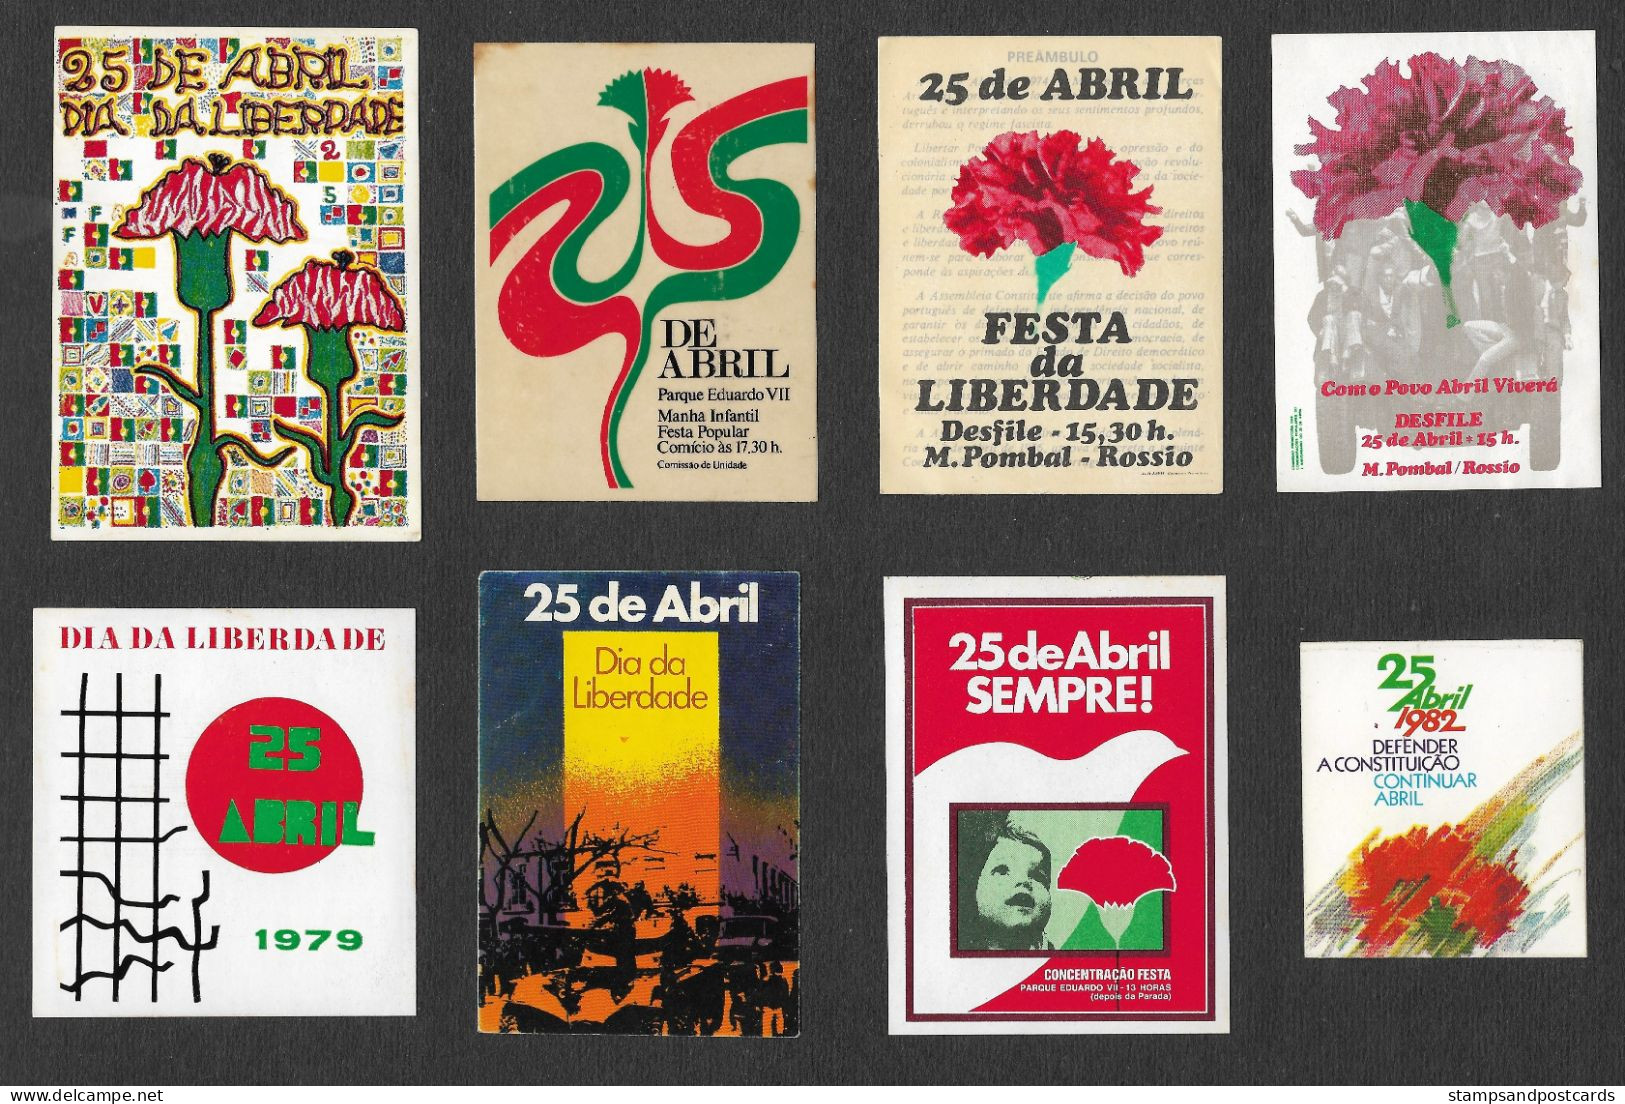 Portugal 13 Autocollant Politique 25 Avril 1974 Révolution Des œillets April 25 Carnation Revolution Political Sticker - Aufkleber